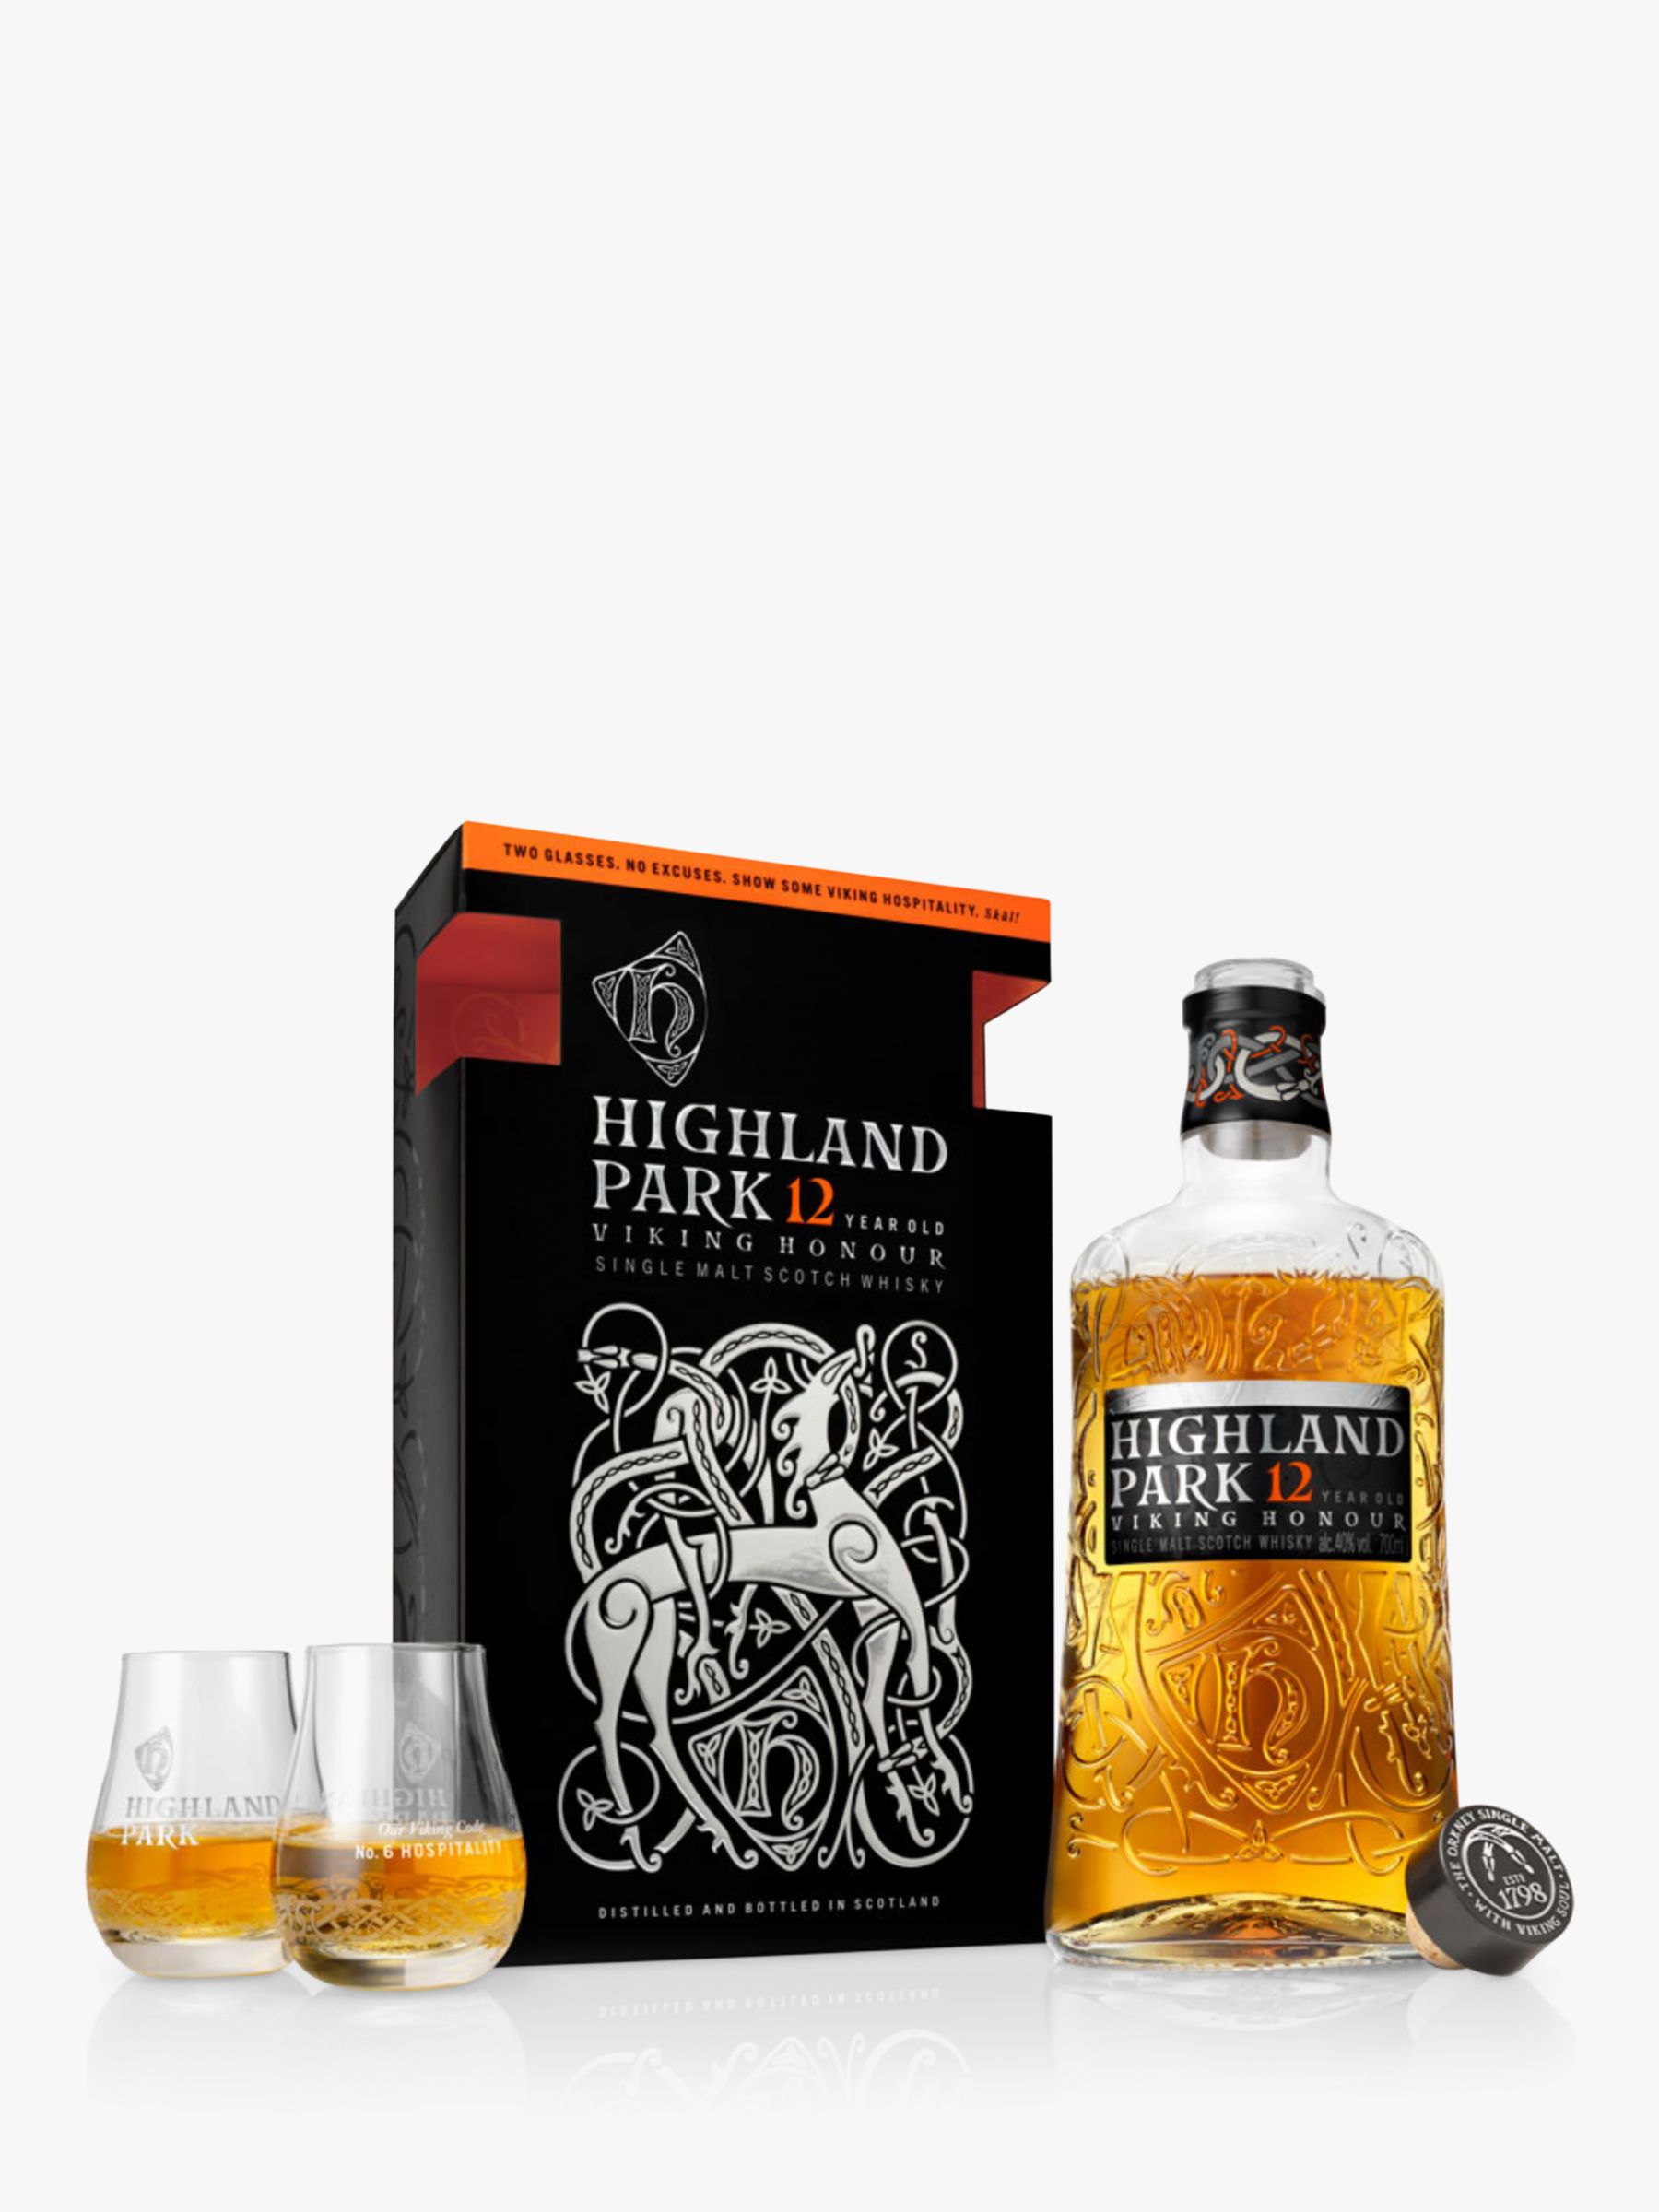 Raise a horn to Highland Park 12 Single Malt Scotch